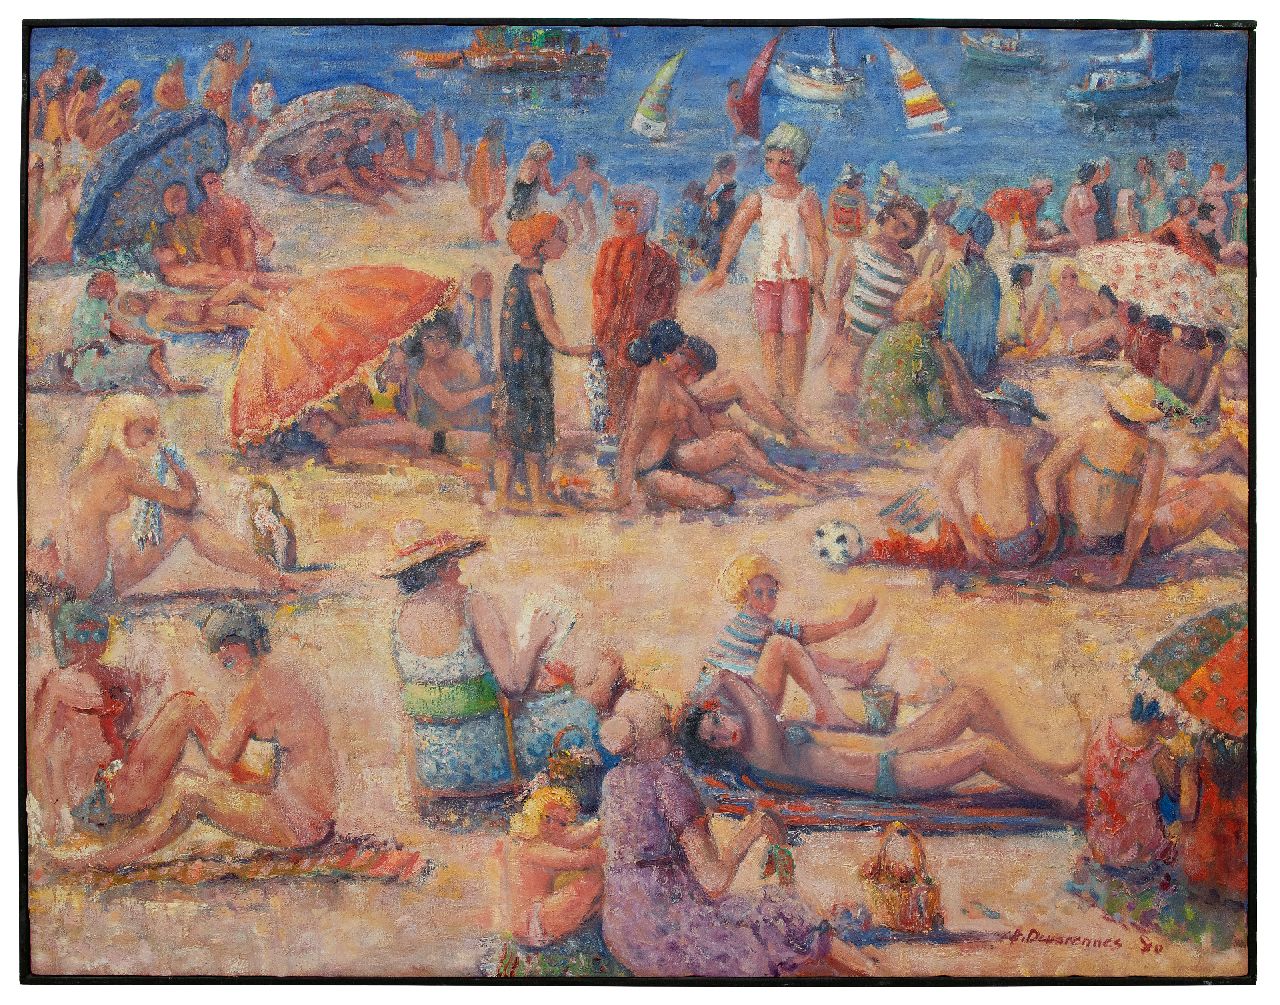 Devarennes C.  | Charly Devarennes, Op het strand, Collioure, olieverf op doek 105,0 x 134,1 cm, gesigneerd rechtsonder en gedateerd '80